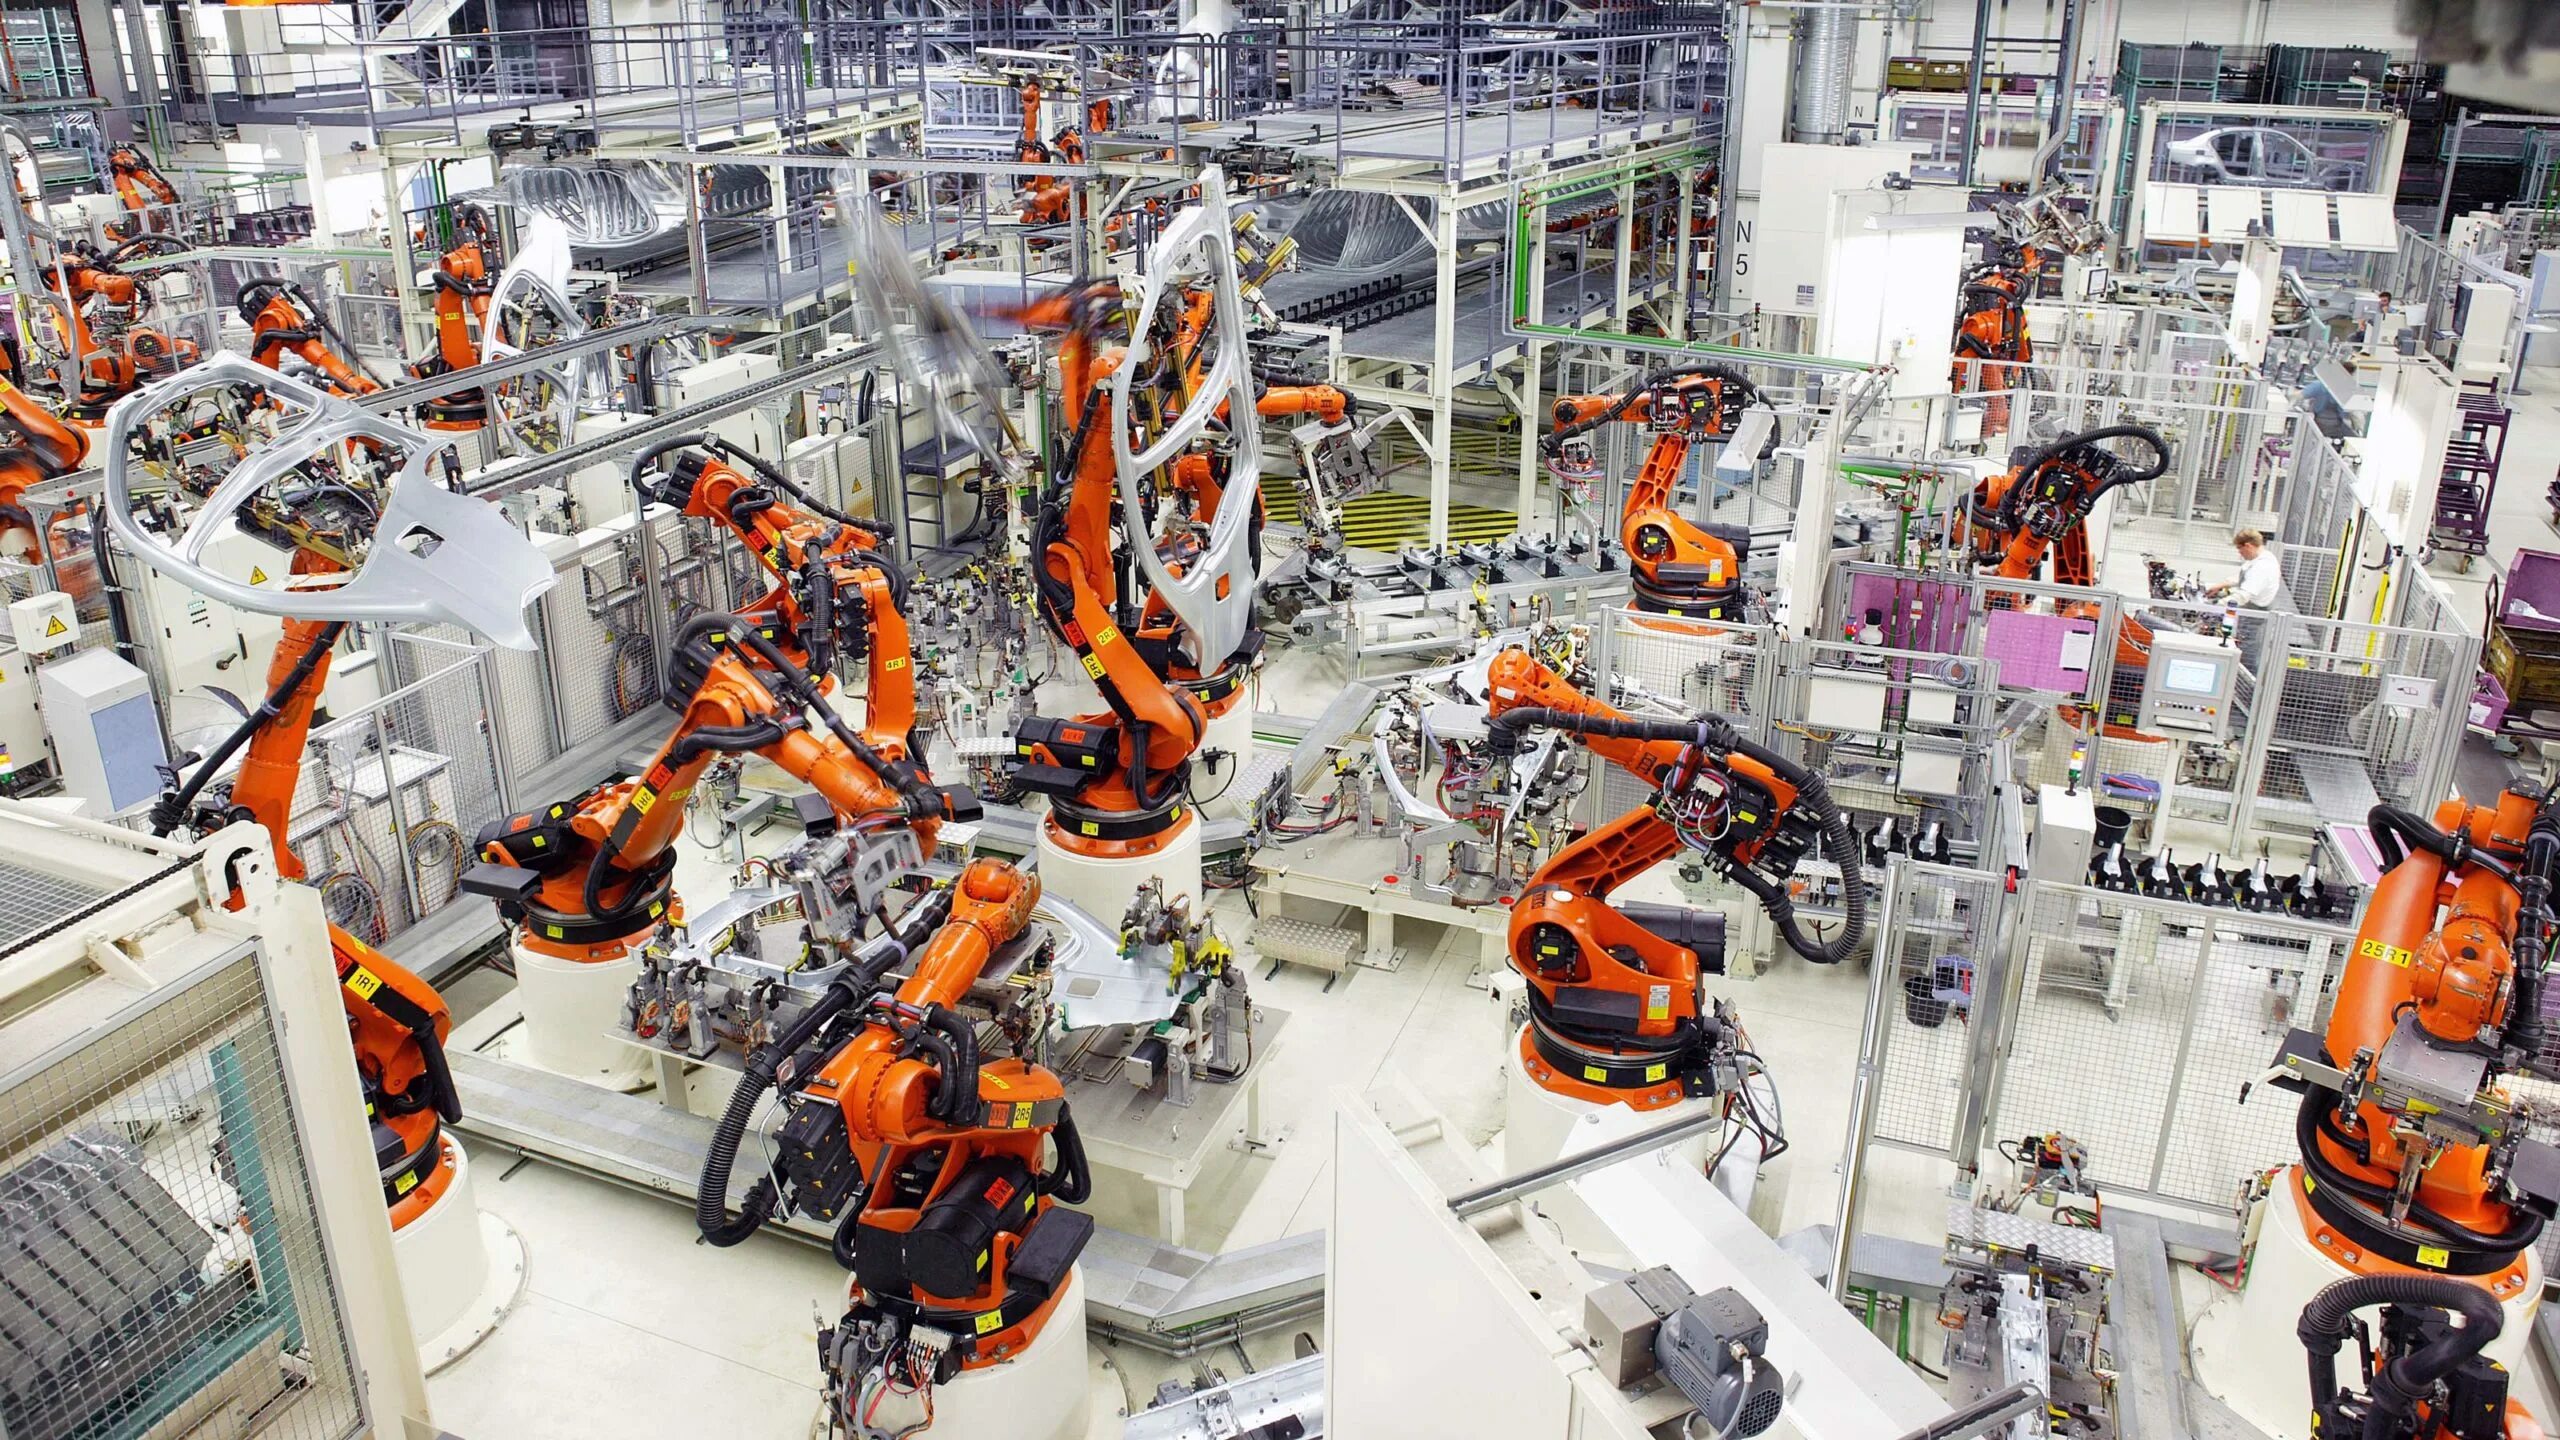 Завод фабрика kuka в Германии. Kuka промышленные роботы Тесла. Машиностроение промышленность. Современное Машиностроение. Производство техники центры